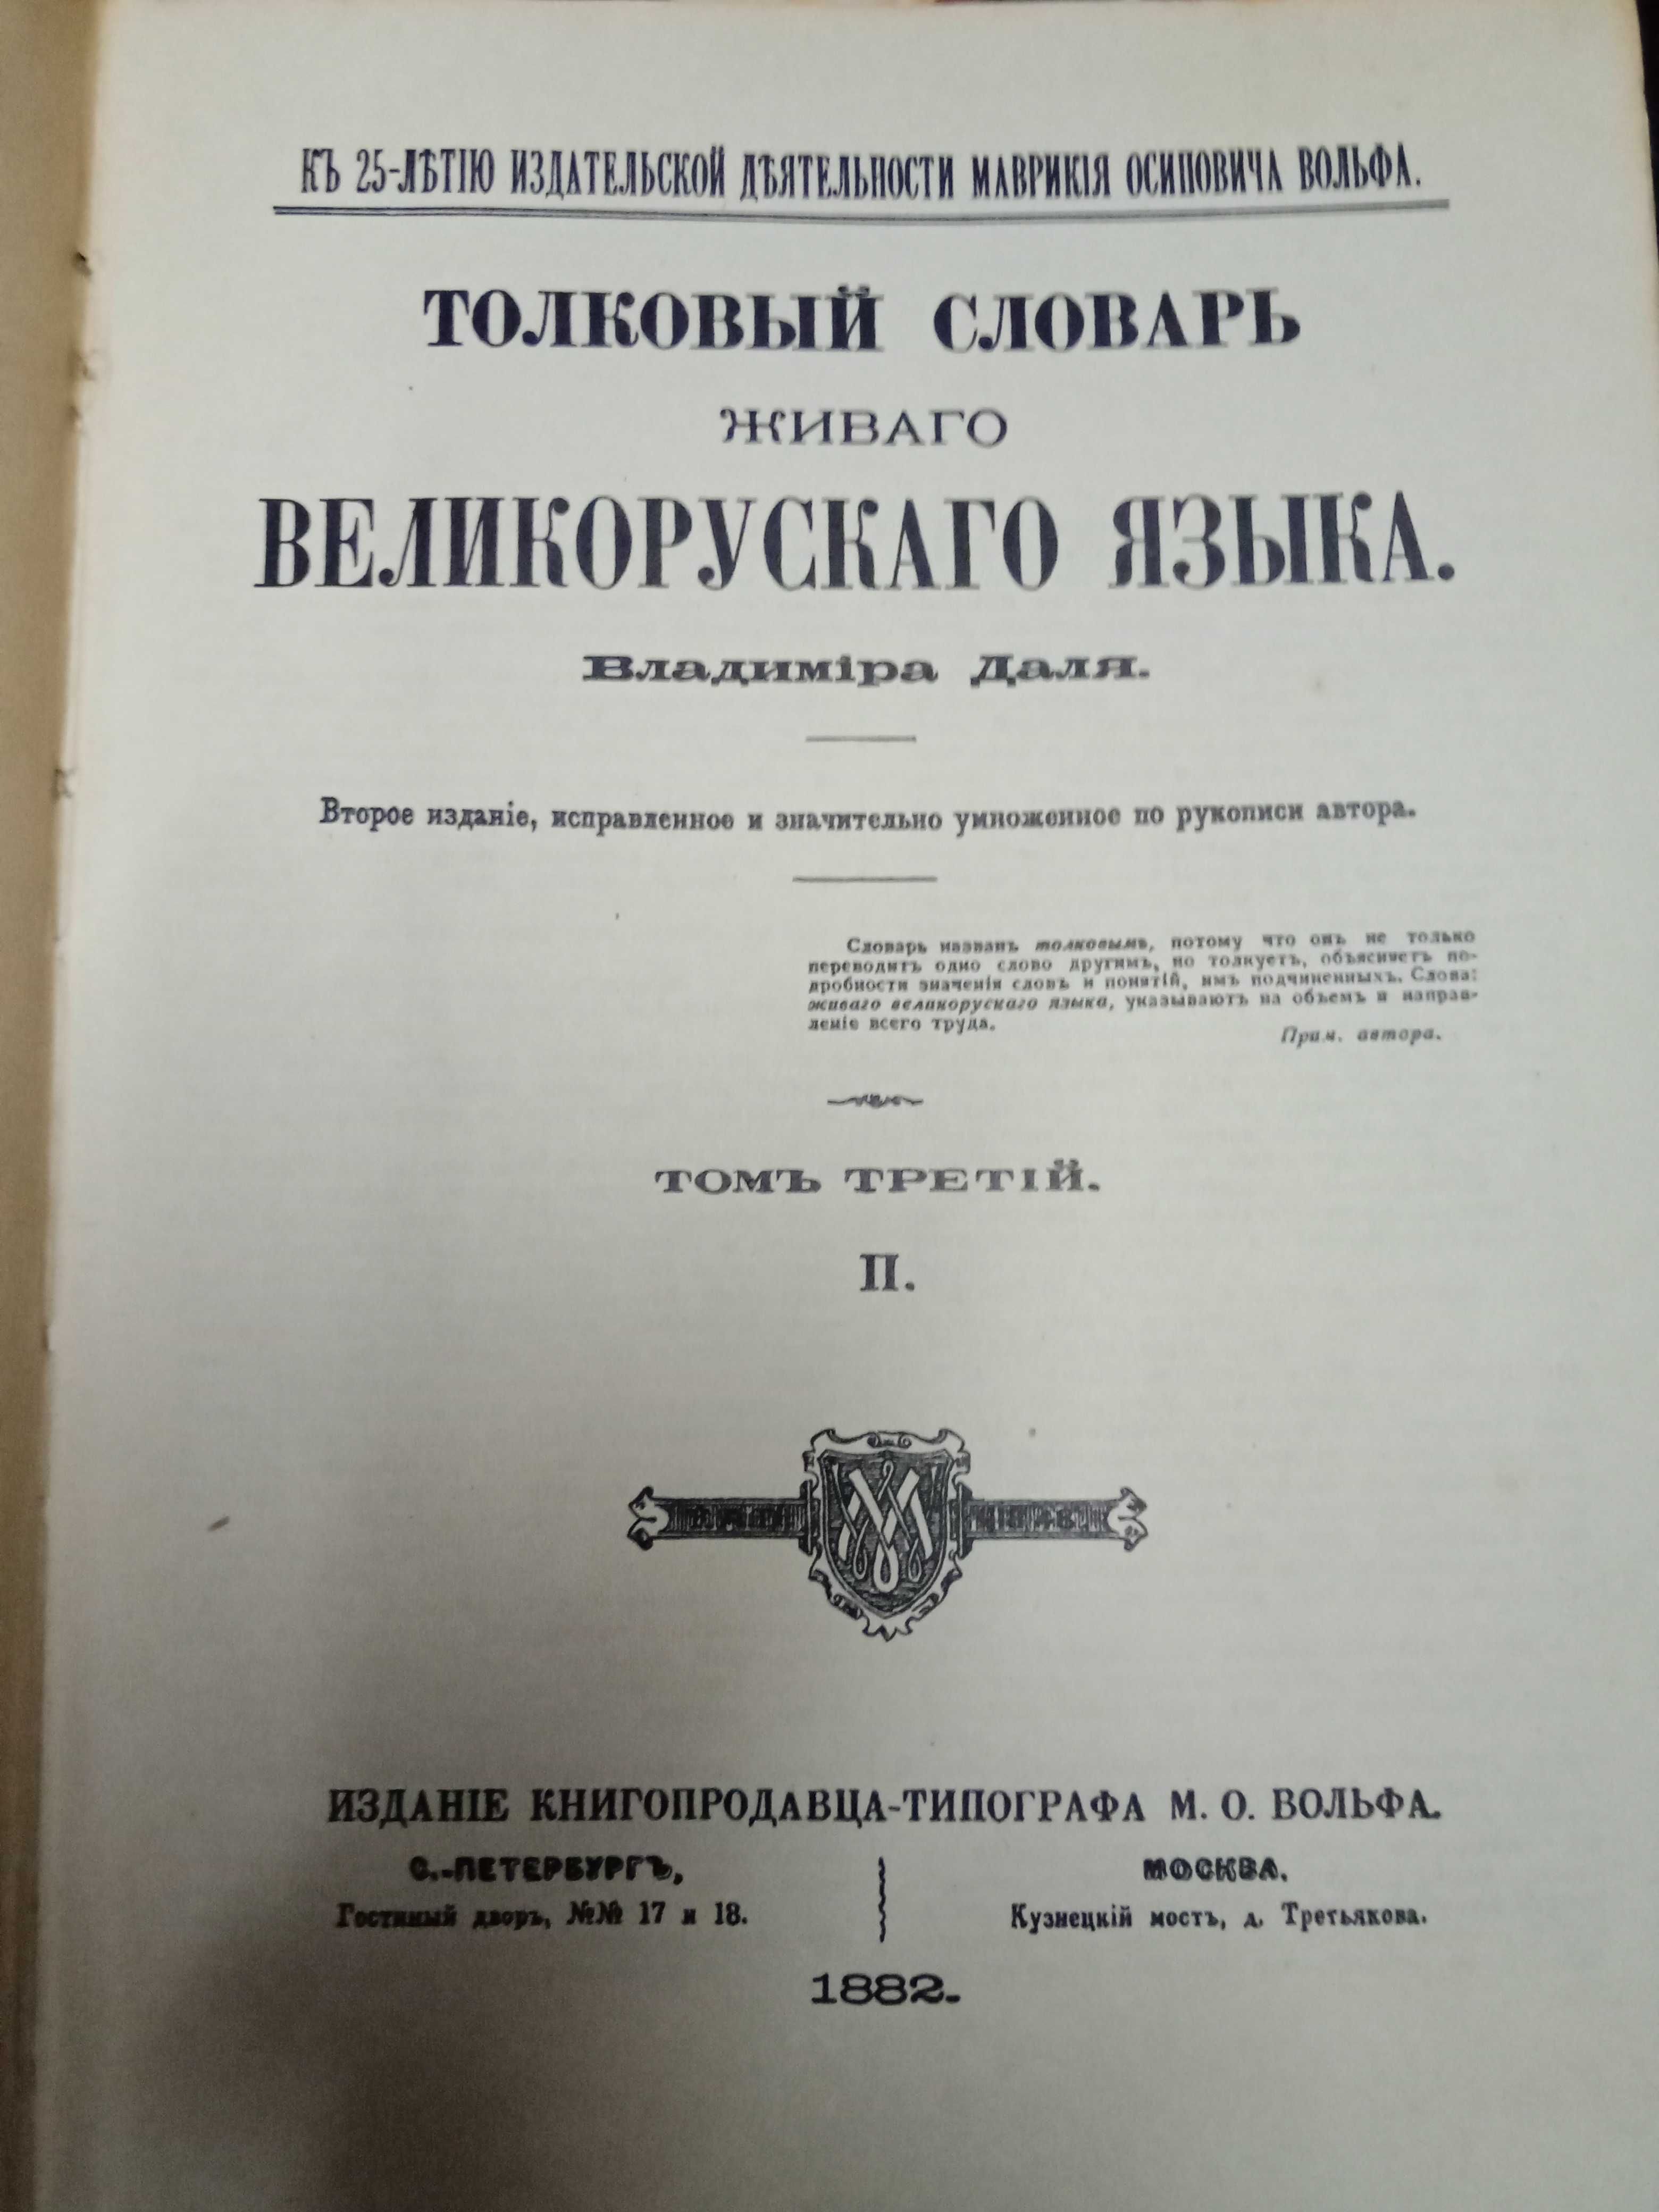 Толковый словарь в 4-х томах в. даля